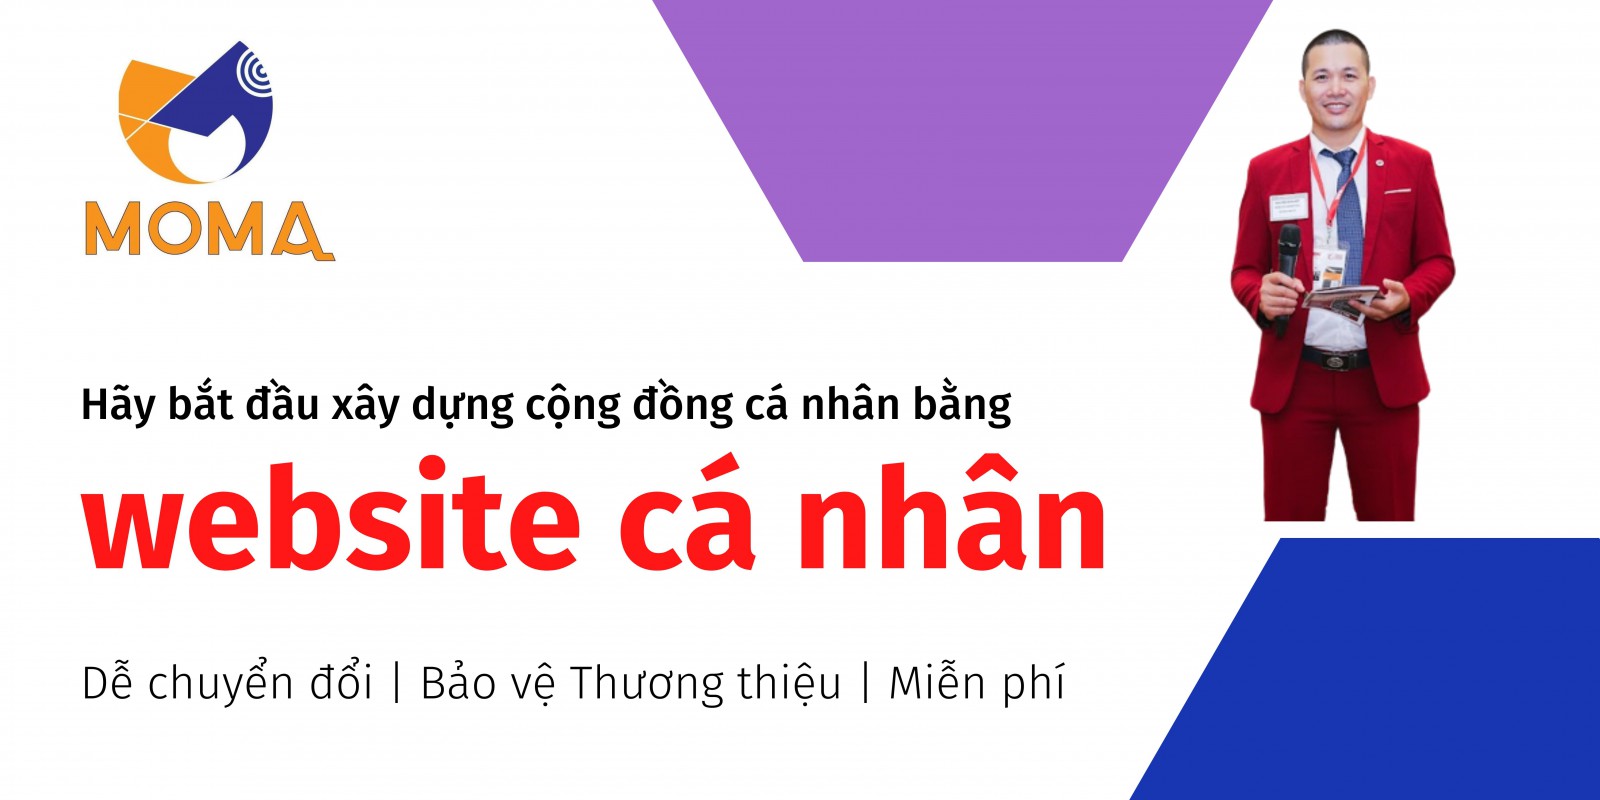 Dịch vụ thiết kế website cá nhân moma.vn